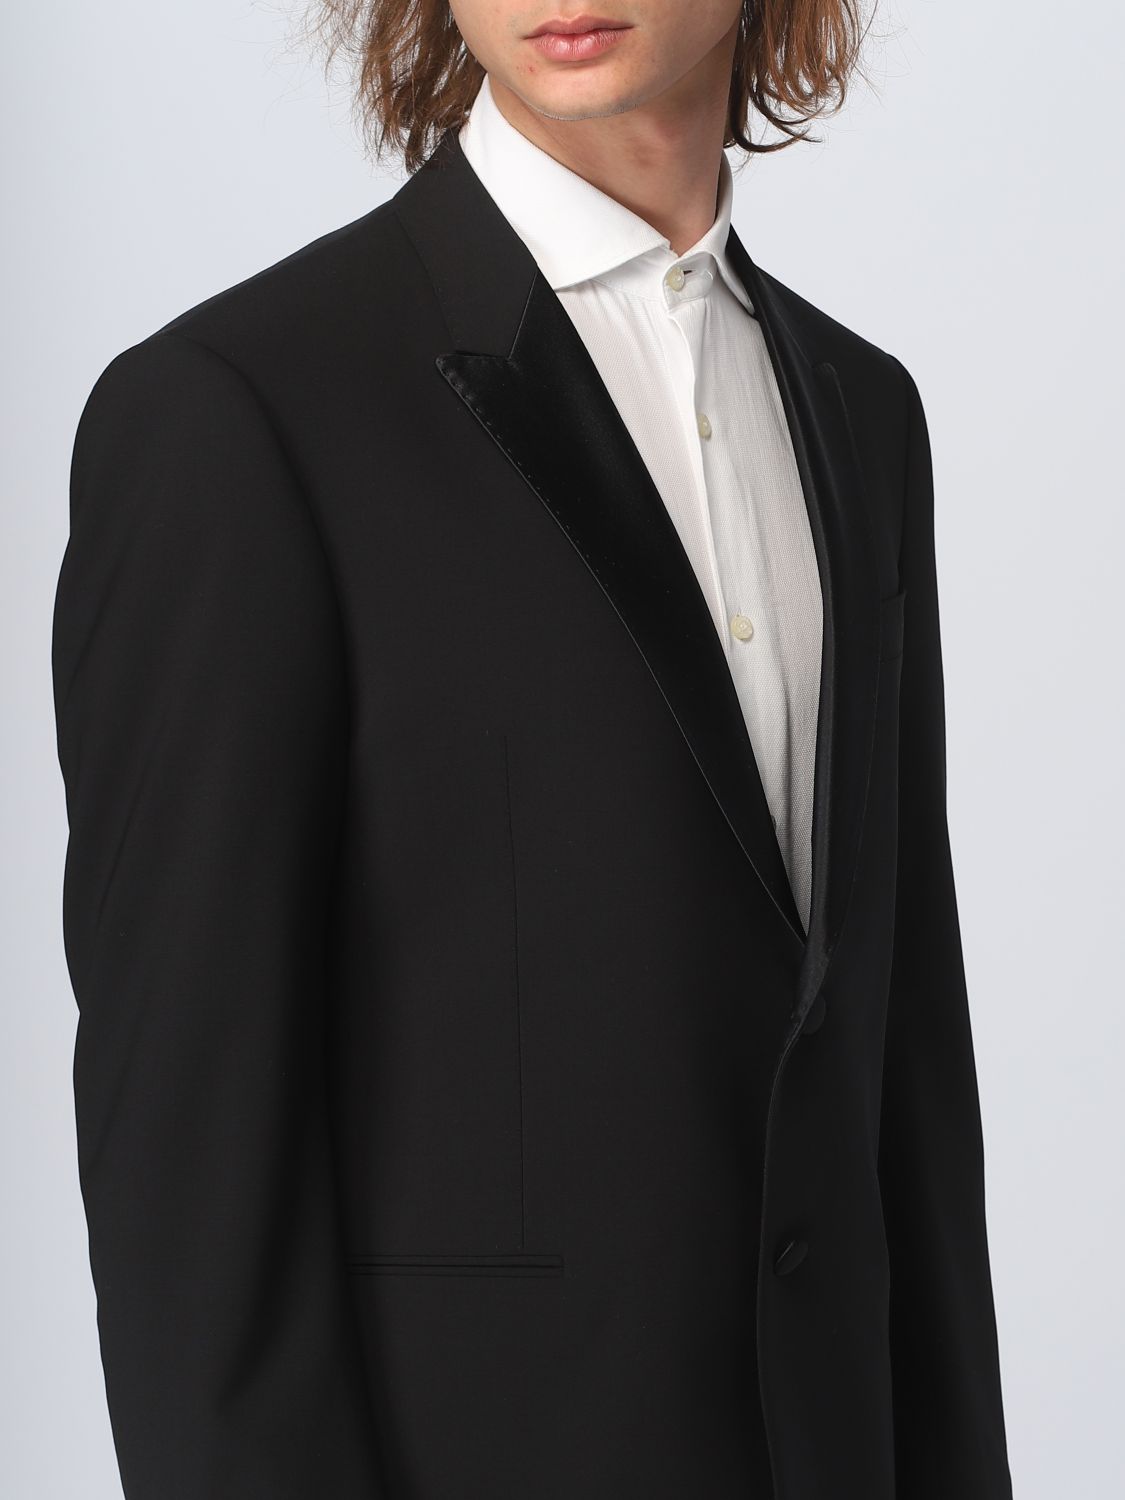 EMPORIO ARMANI: suit for man - Black | Emporio Armani suit 01VMOP0156  online on 